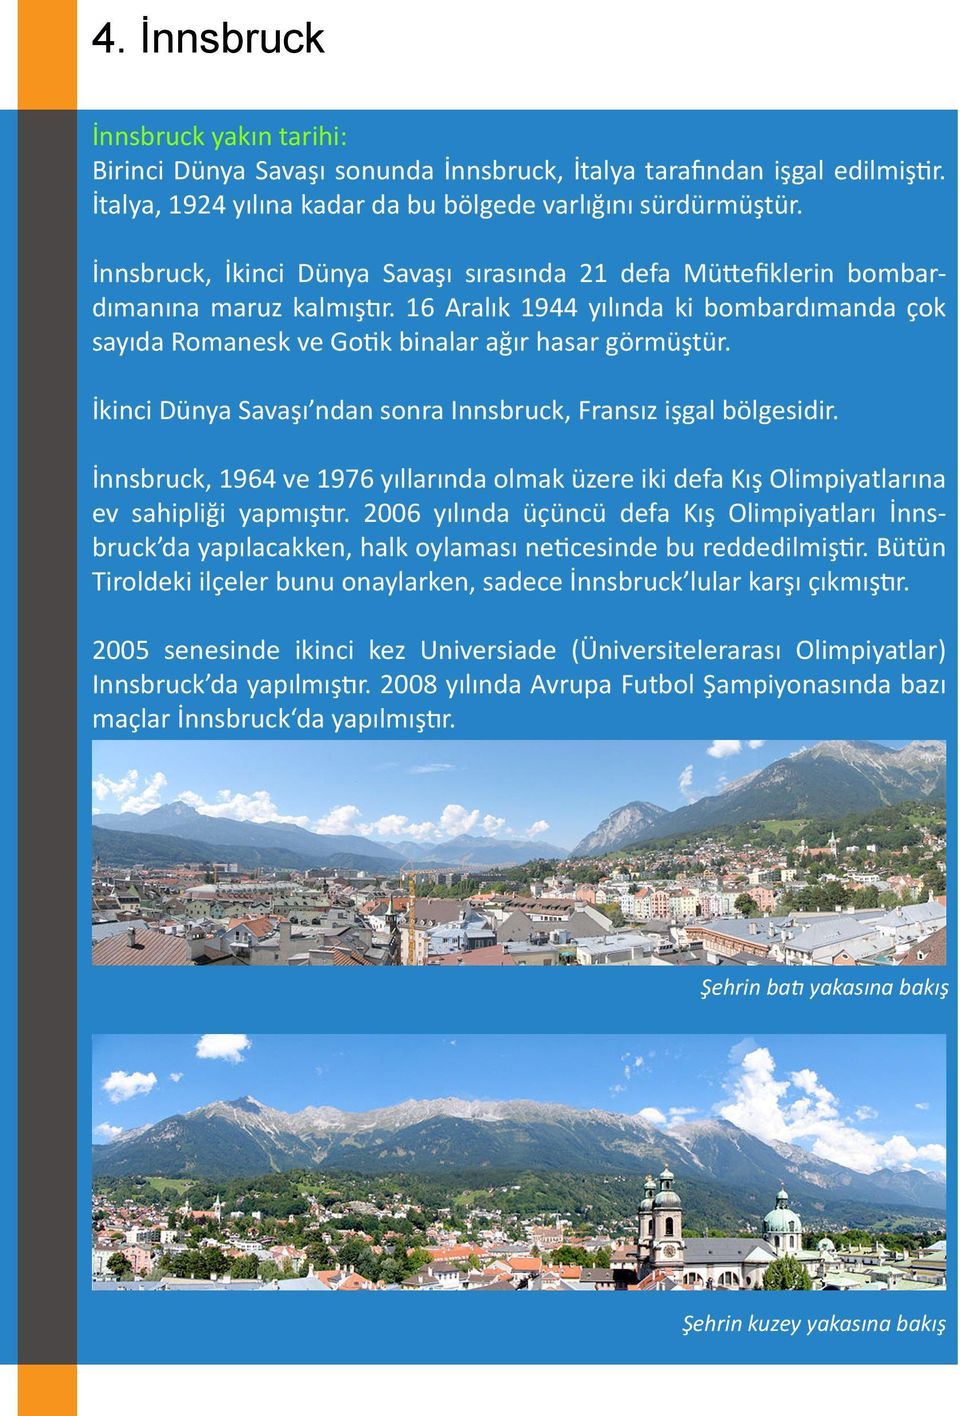 İkinci Dünya Savaşı ndan sonra Innsbruck, Fransız işgal bölgesidir. İnnsbruck, 1964 ve 1976 yıllarında olmak üzere iki defa Kış Olimpiyatlarına ev sahipliği yapmıştır.